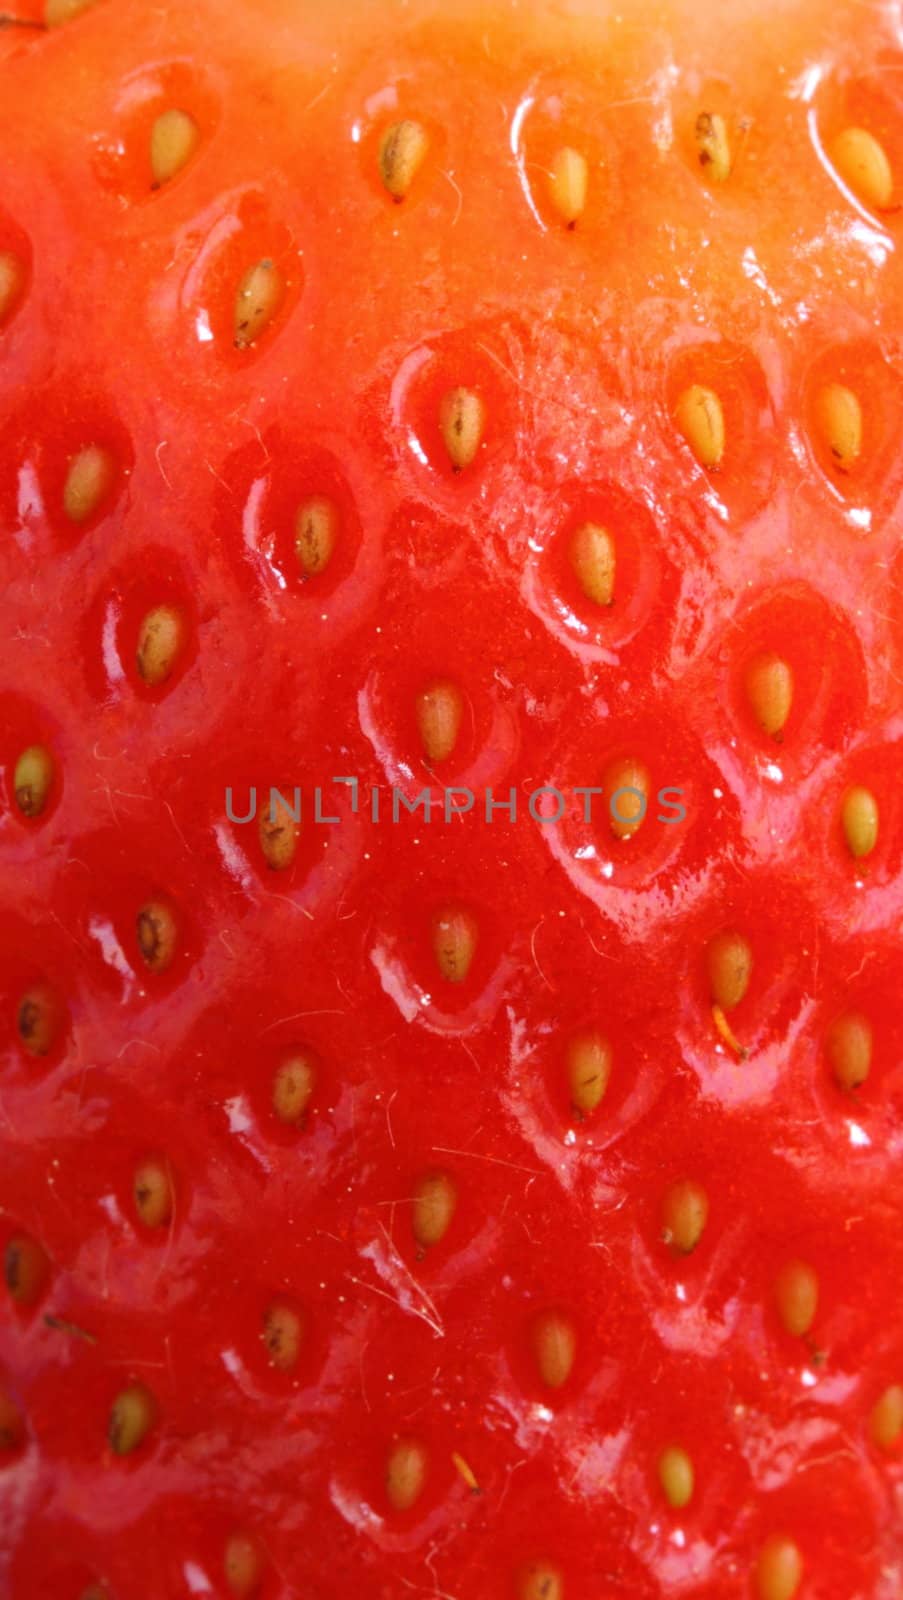 strawberry by mitzy